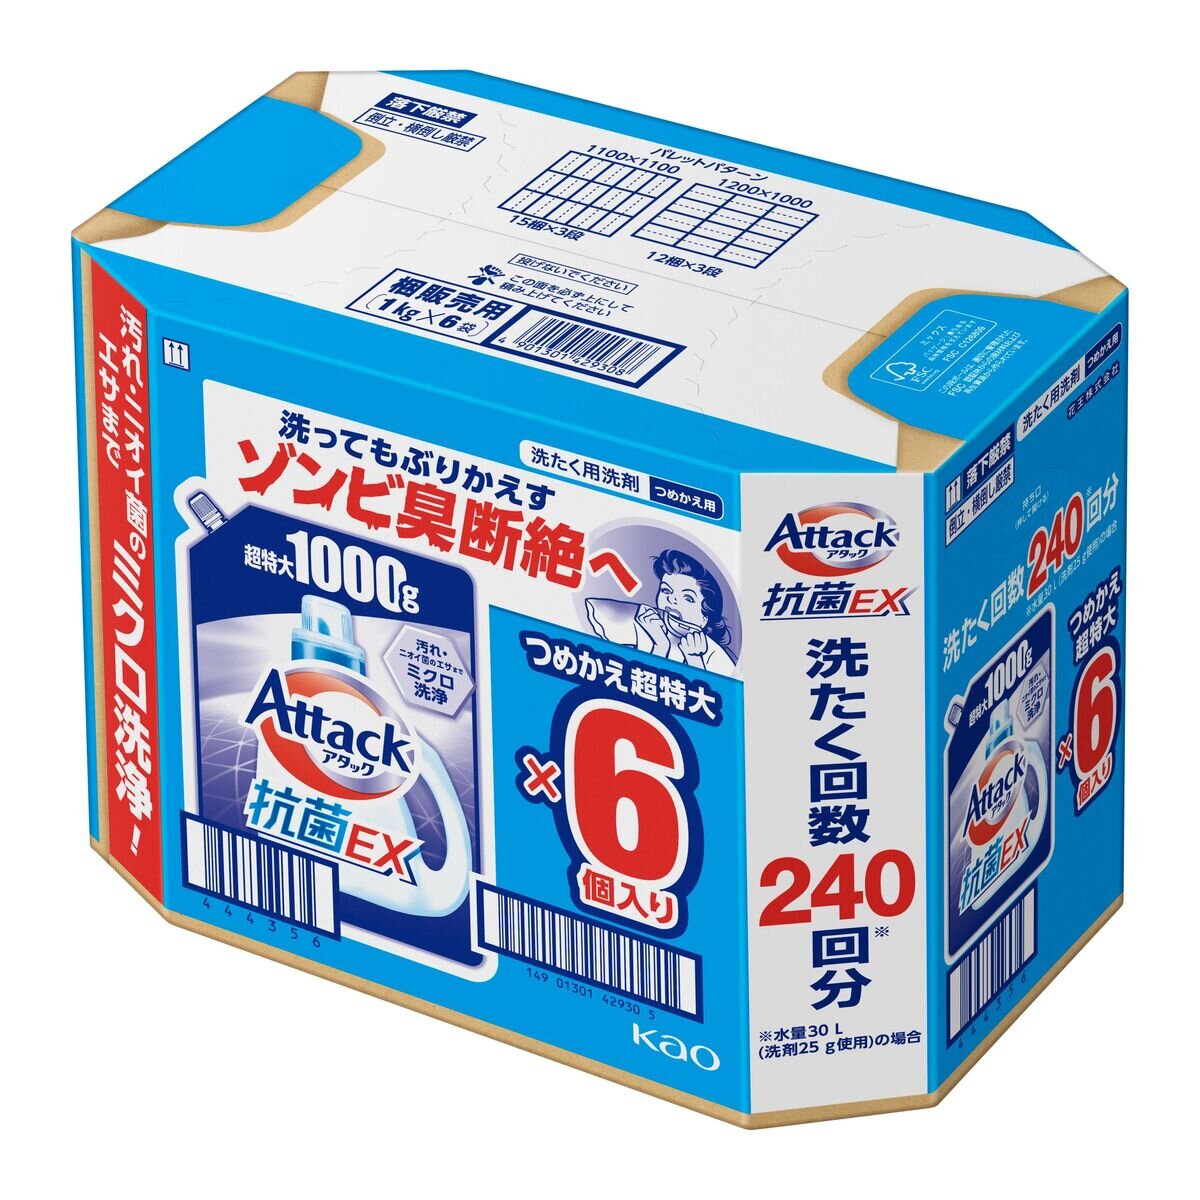 アタック抗菌EX 洗濯洗剤 詰替え 1000g x 6 個入り | Costco Japan